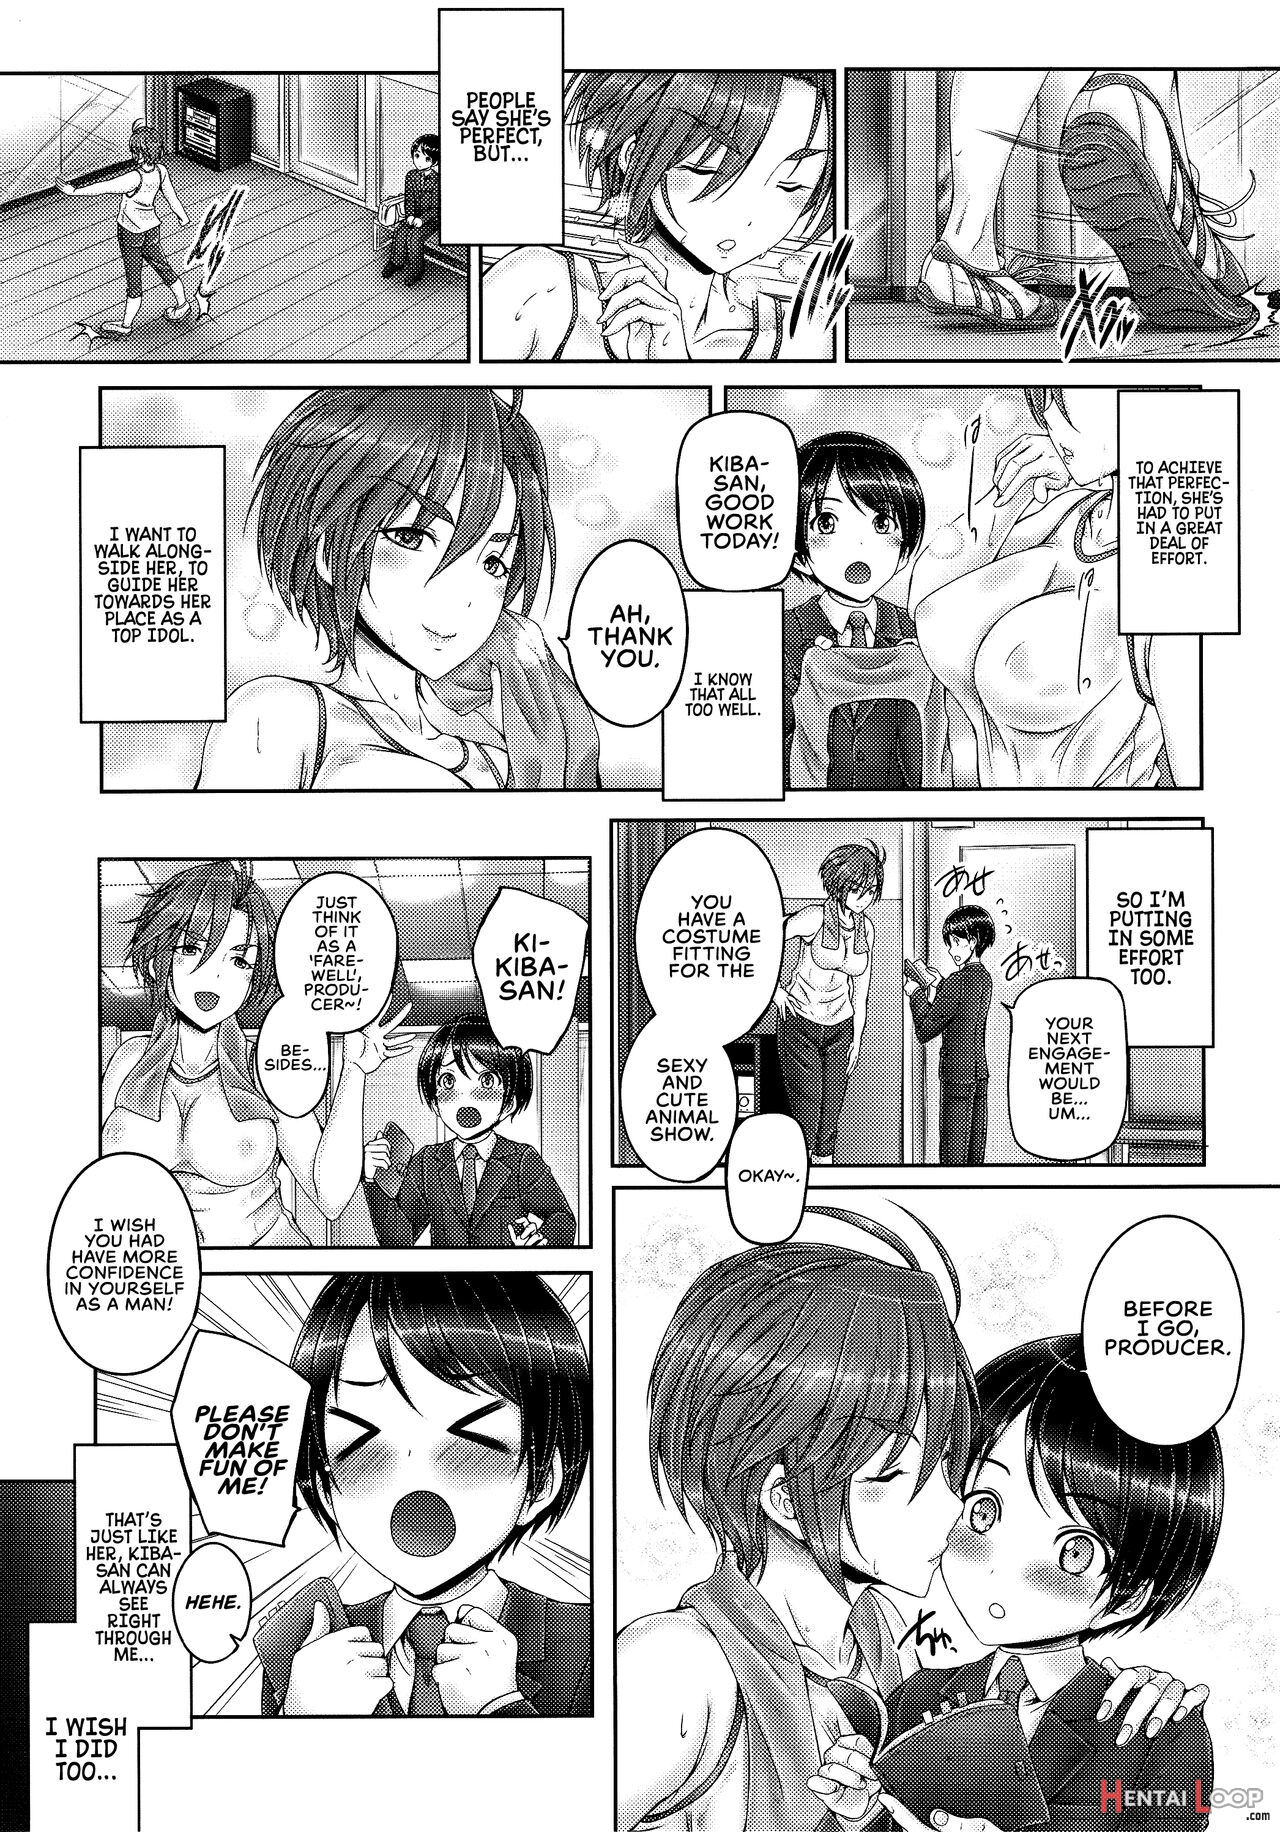 Kiba-san To Shota-p page 2